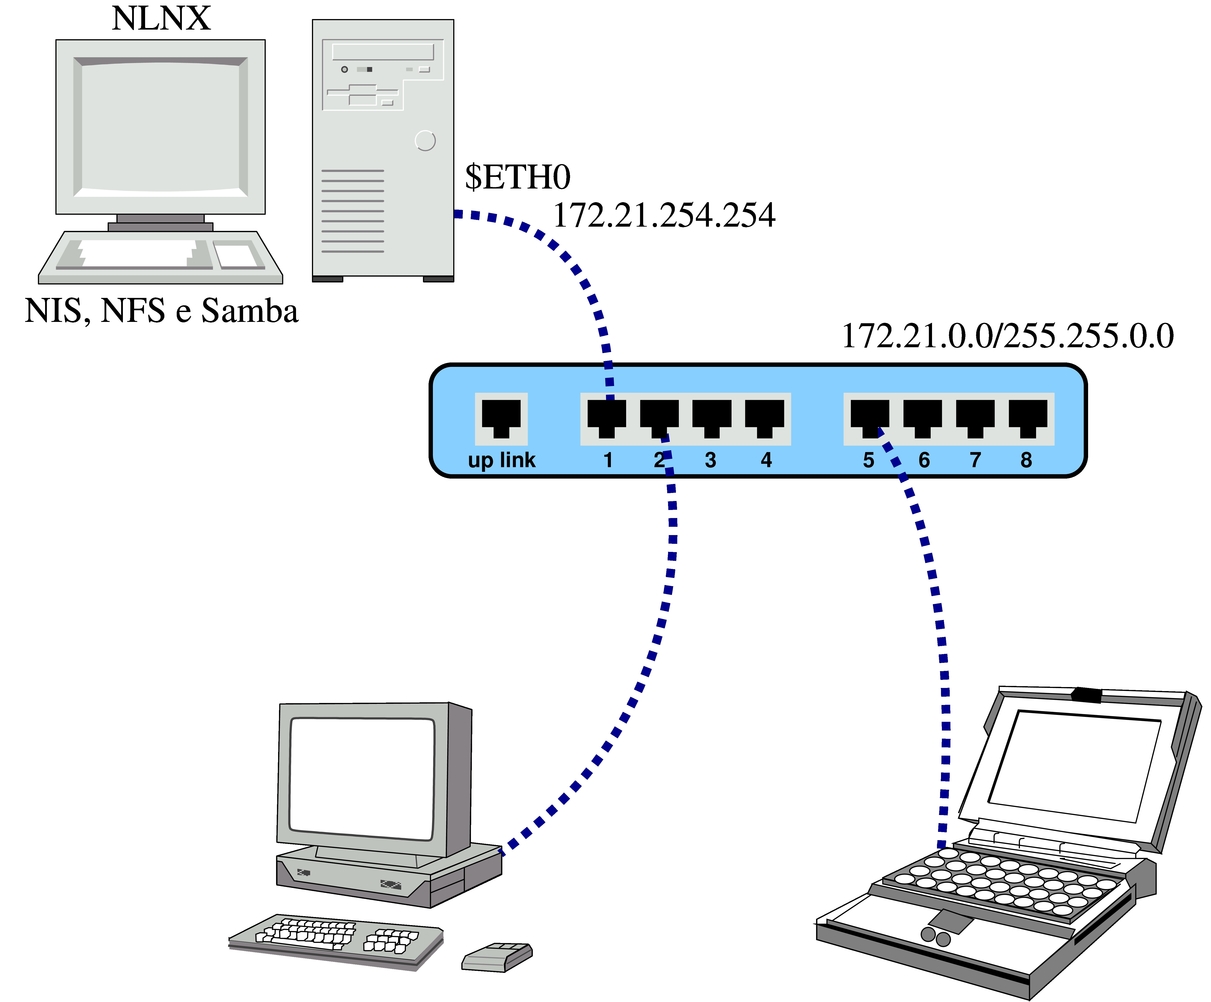 NIS e NFS con NLNX